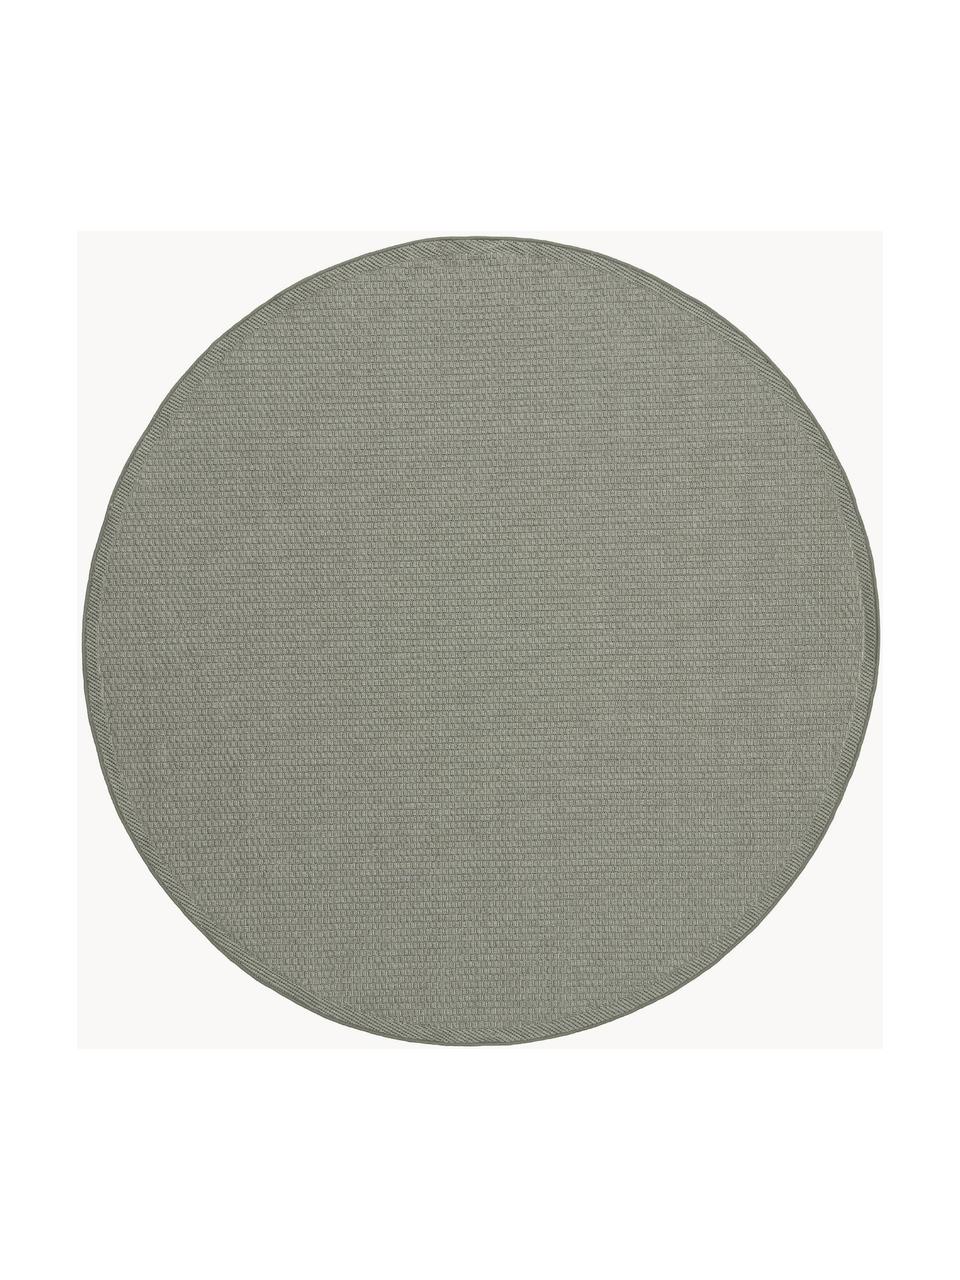 Okrągły dywan wewnętrzny/zewnętrzny Toronto, 100% polipropylen, Szałwiowy zielony, Ø 120 cm (Rozmiar S)